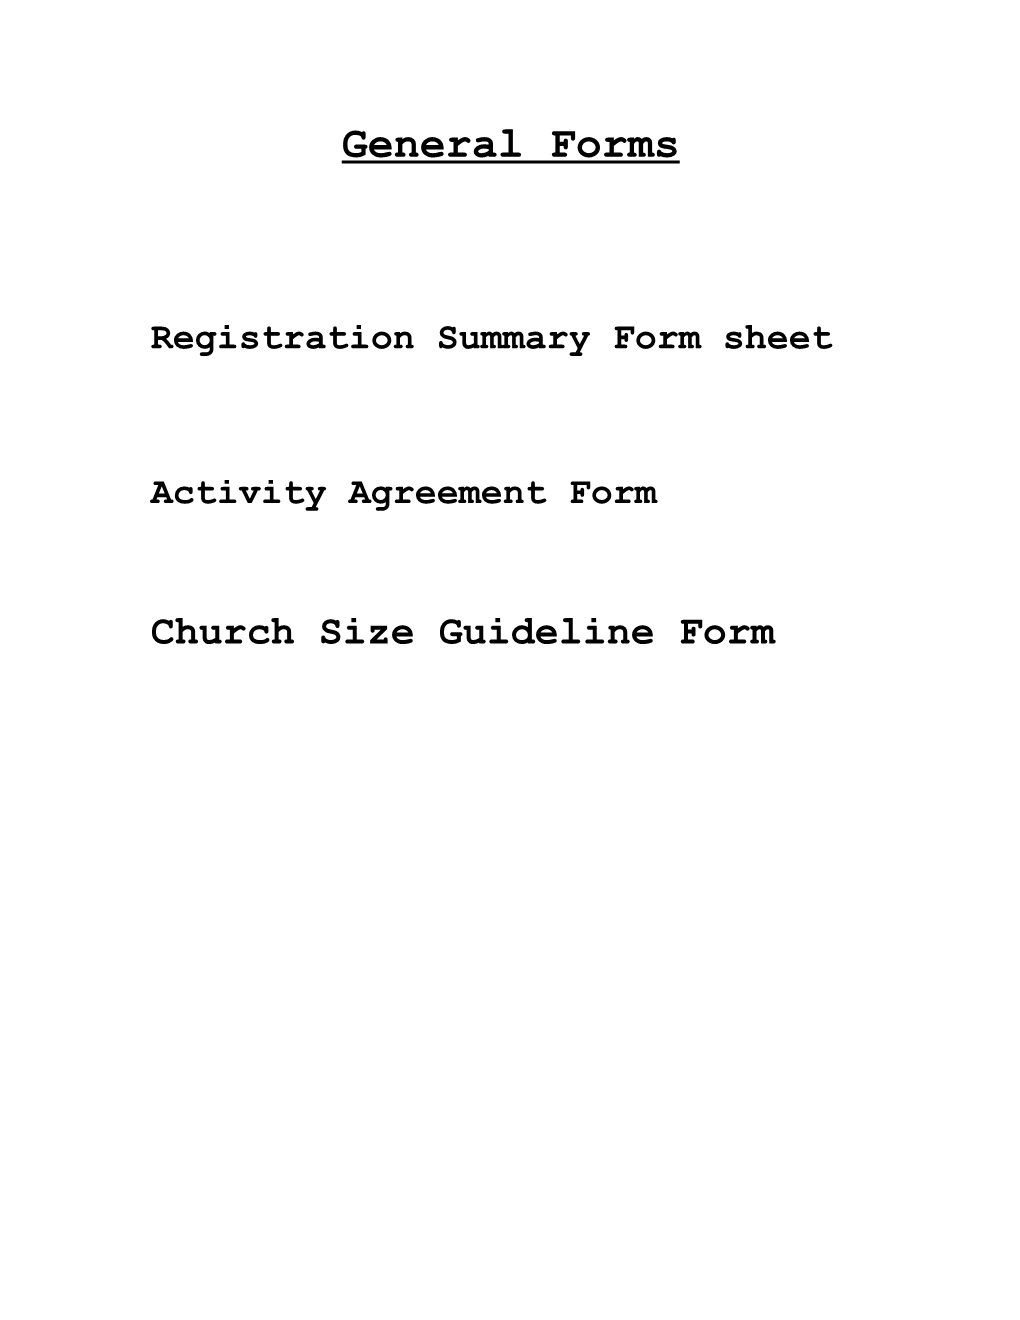 Registration Summary Form Sheet